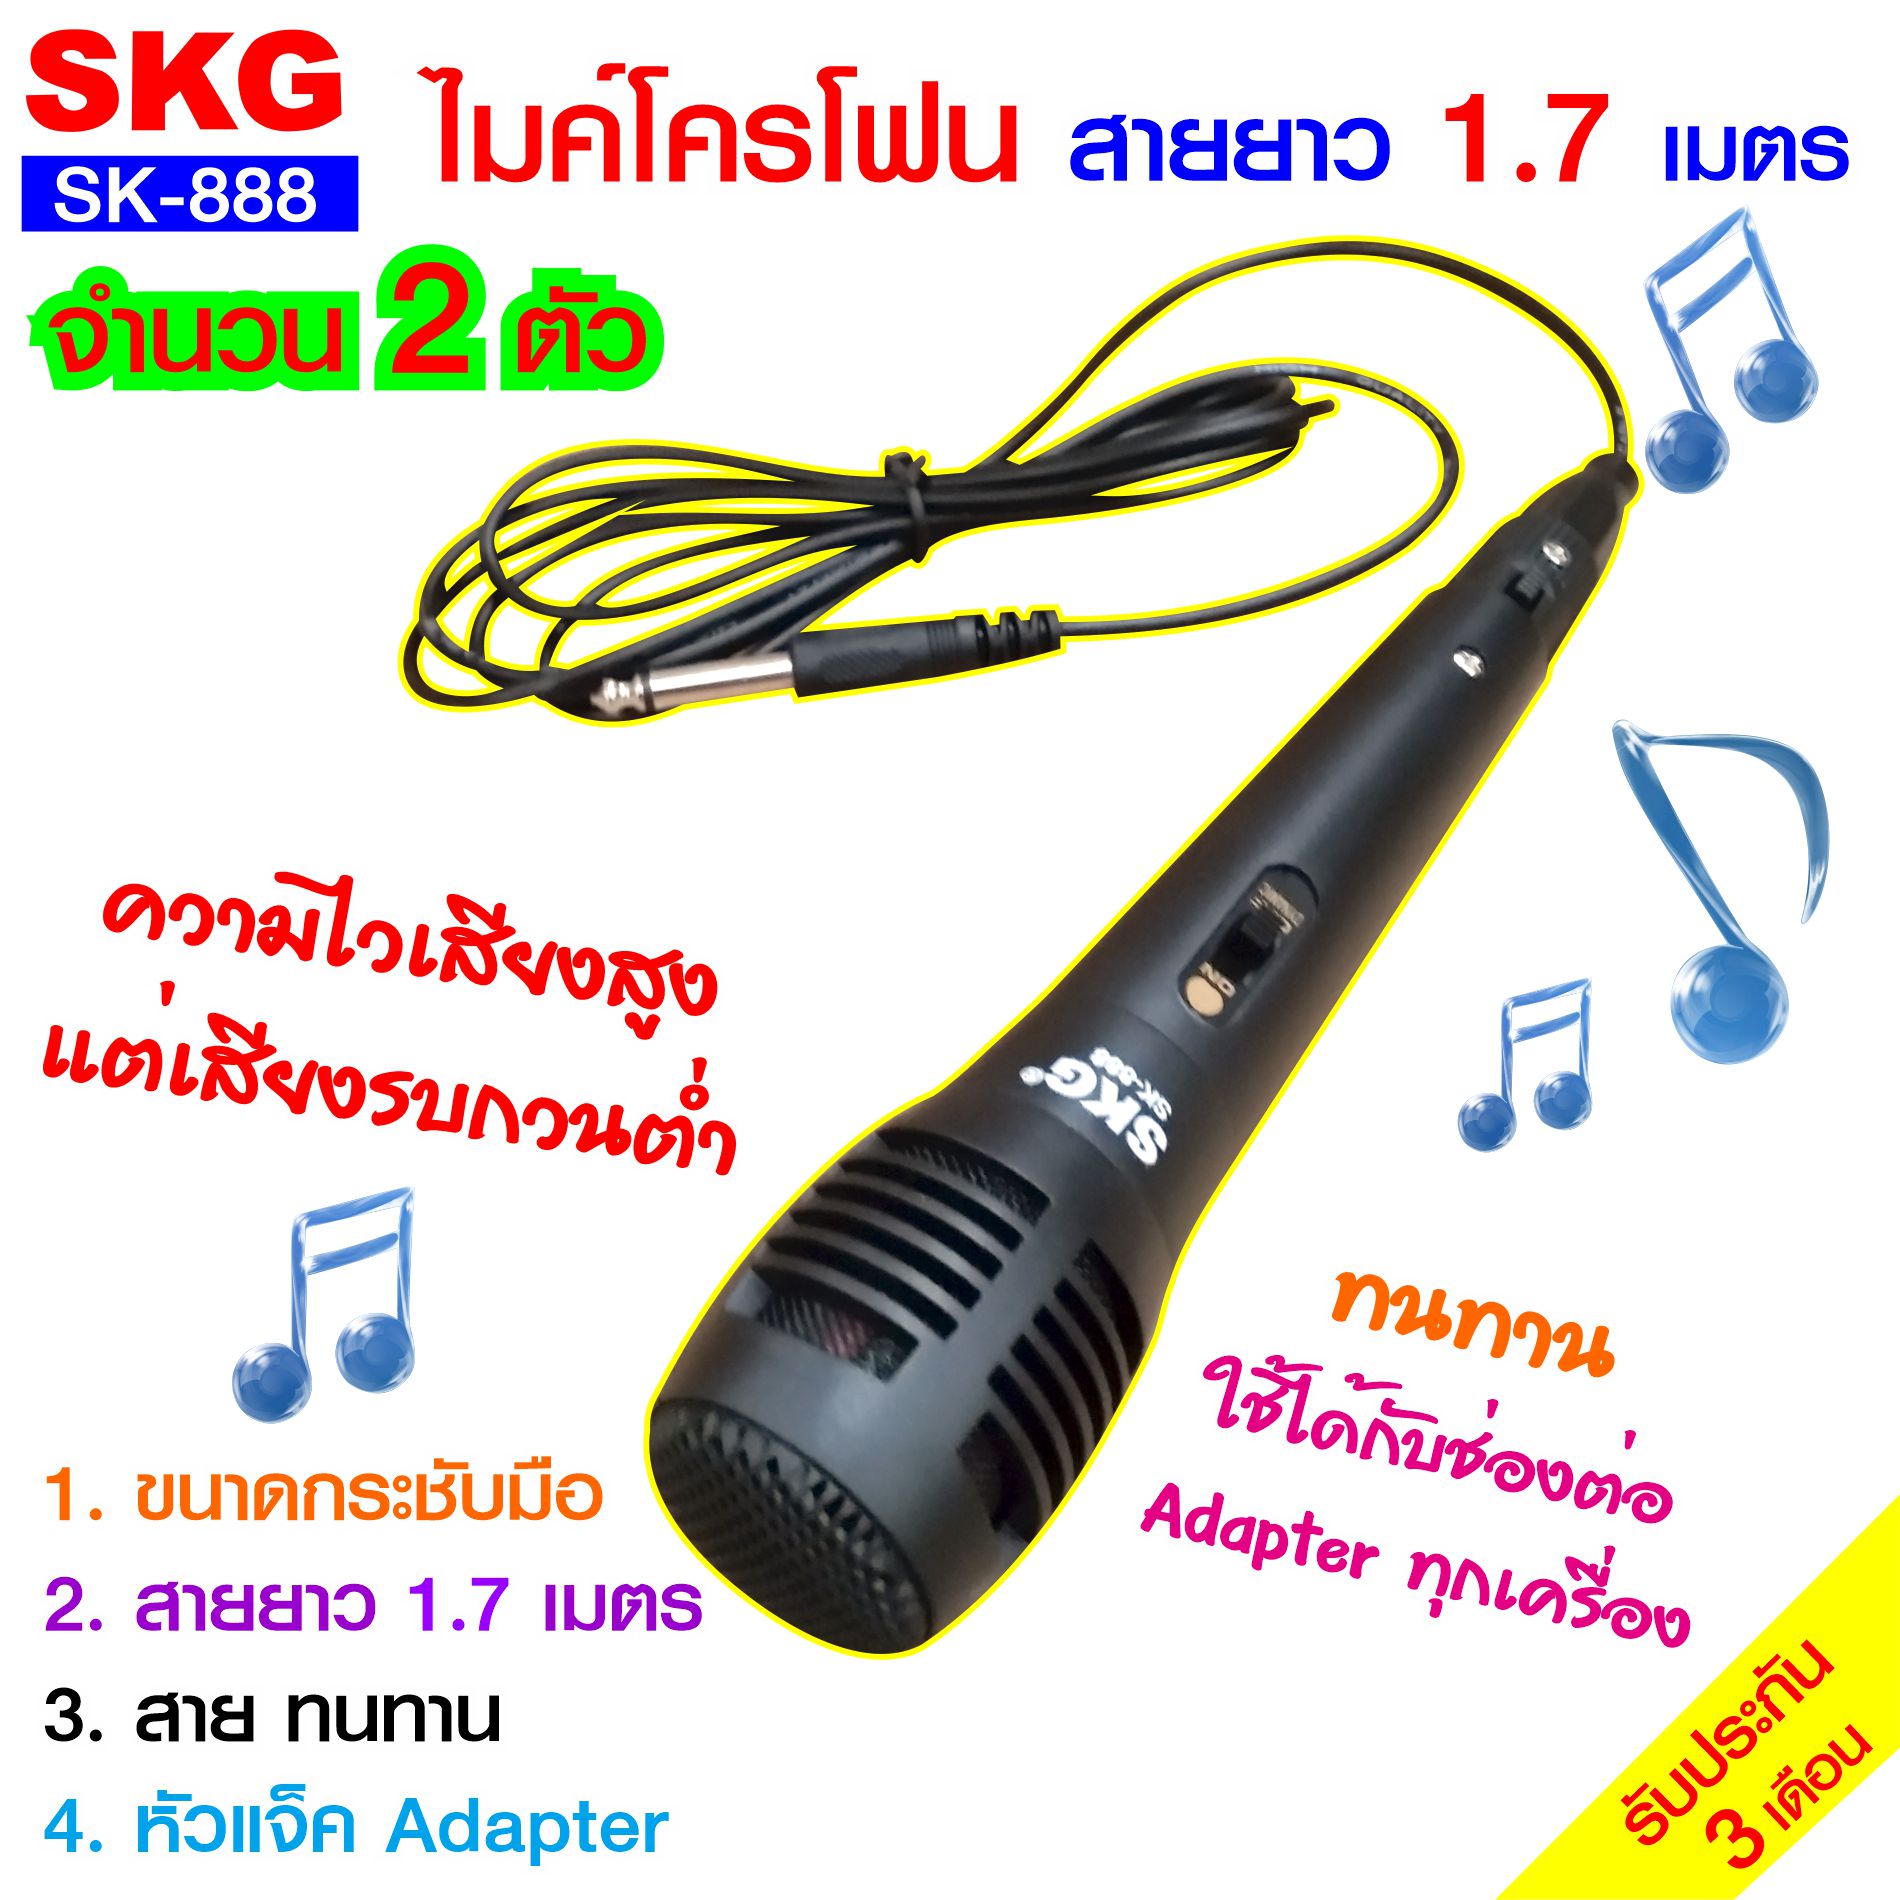 ไมโครโฟน แบบสาย ยาว 1.7เมตร รุ่น SK-888 (สีดำ)